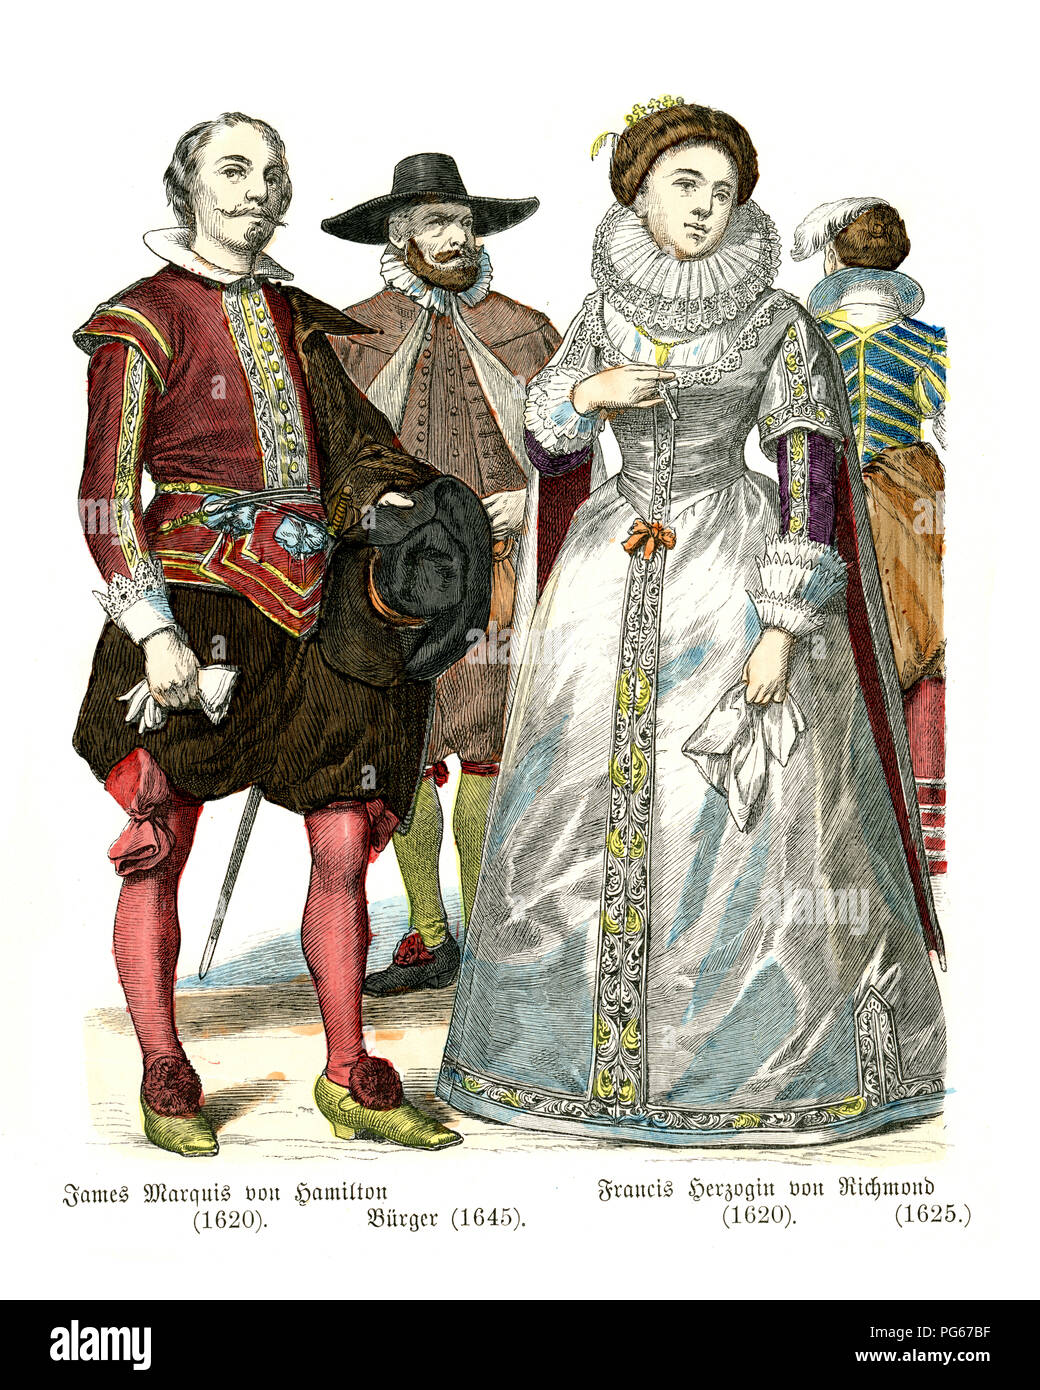 Fashion de milieu du 17ème siècle en Angleterre. Marquis de Hamilton, citoyen, Duchesse de Richmond Banque D'Images